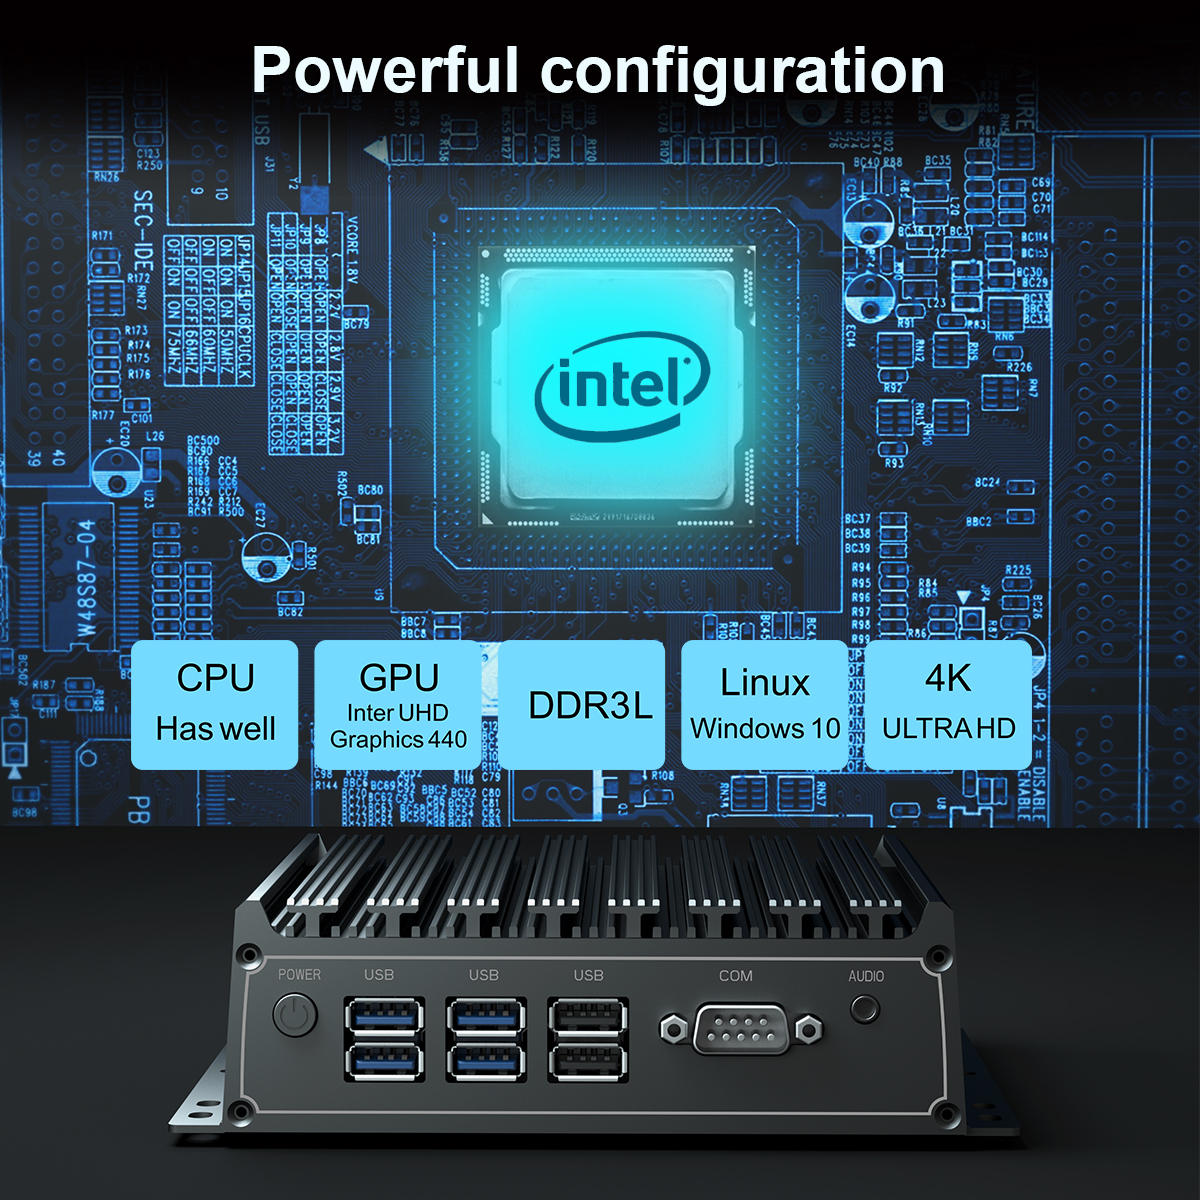 Intel i5 4200 mini pc